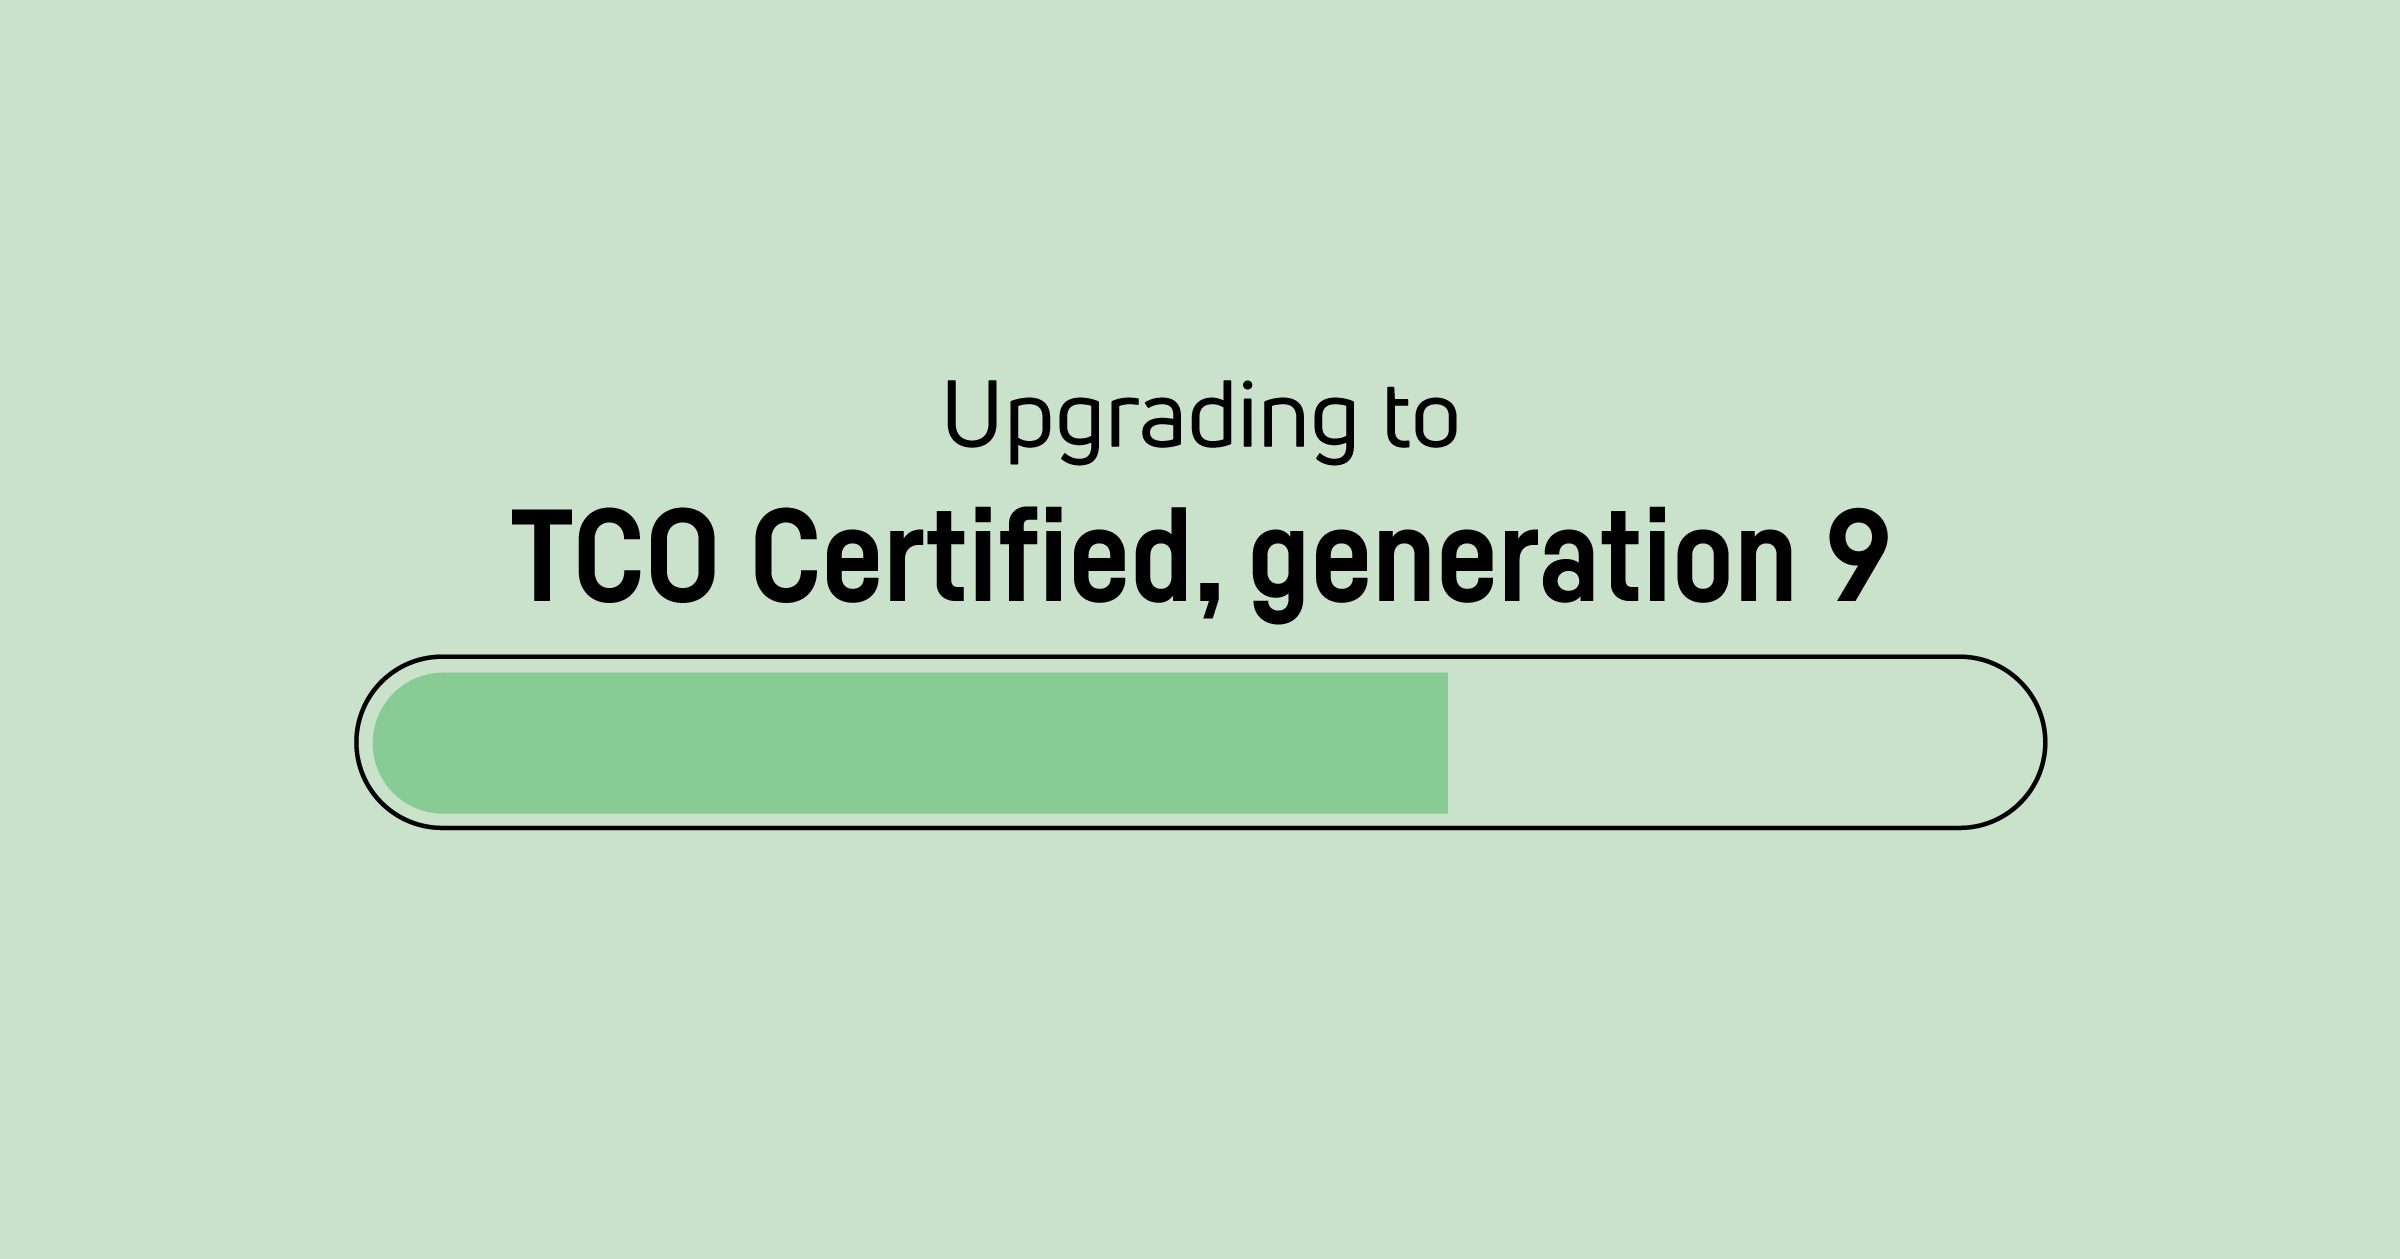 Es hora de actualizar TCO Certified, generation 8